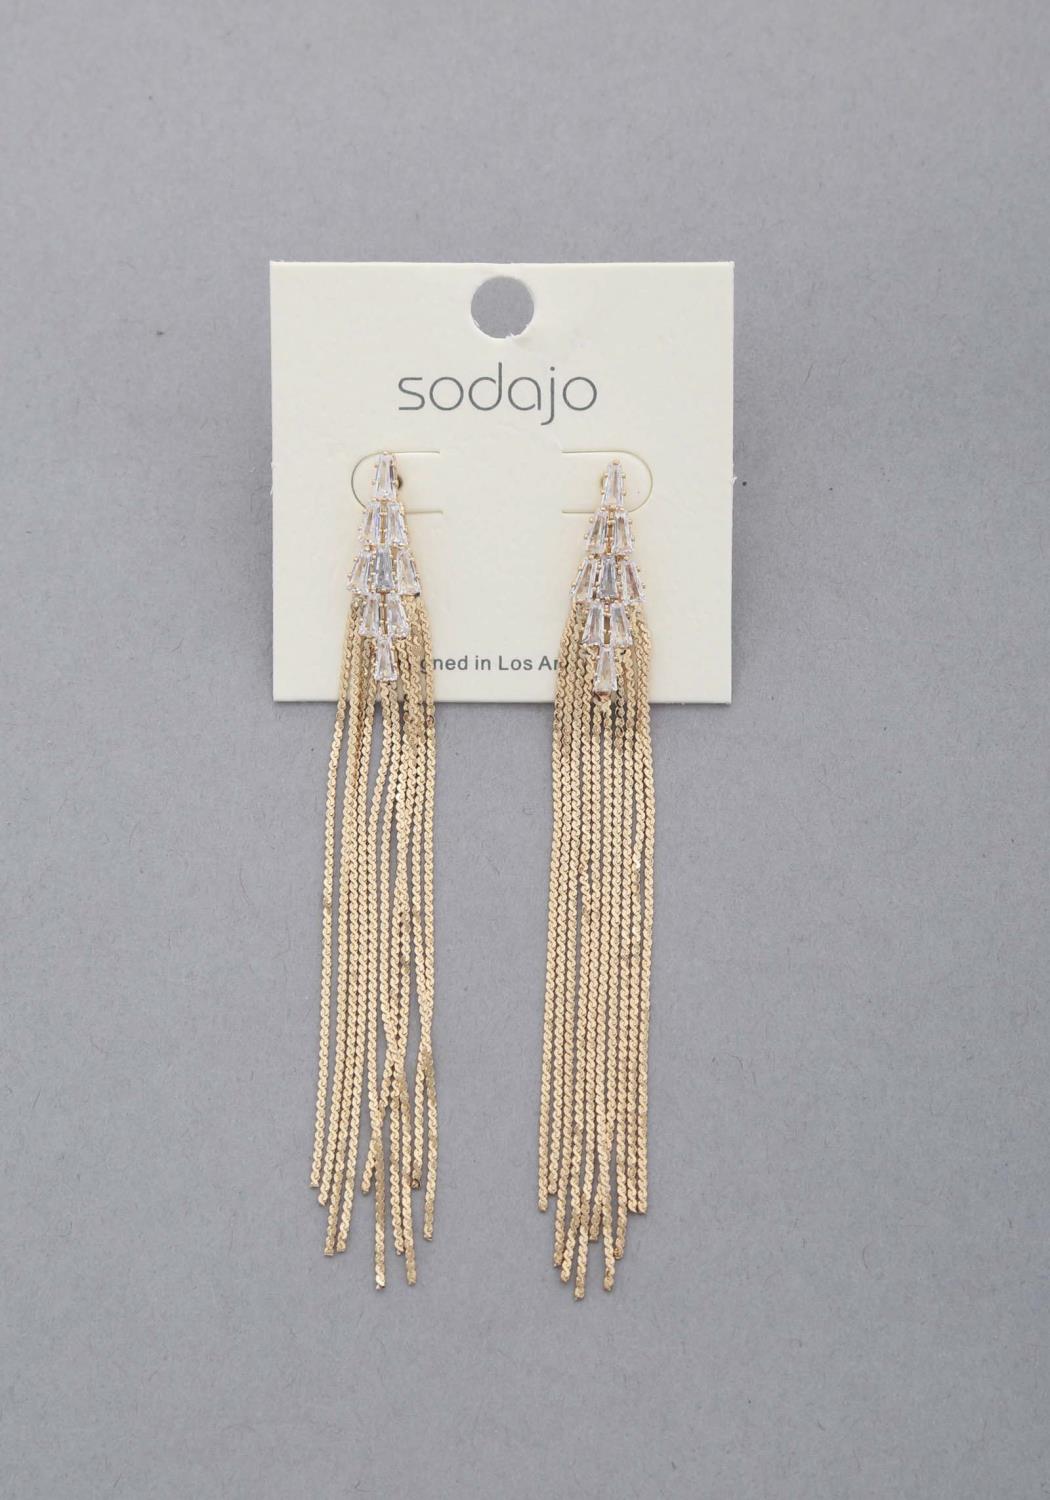 Sodajo Crystal Metal Chain Dangle Earring - Tigbul's Fashion